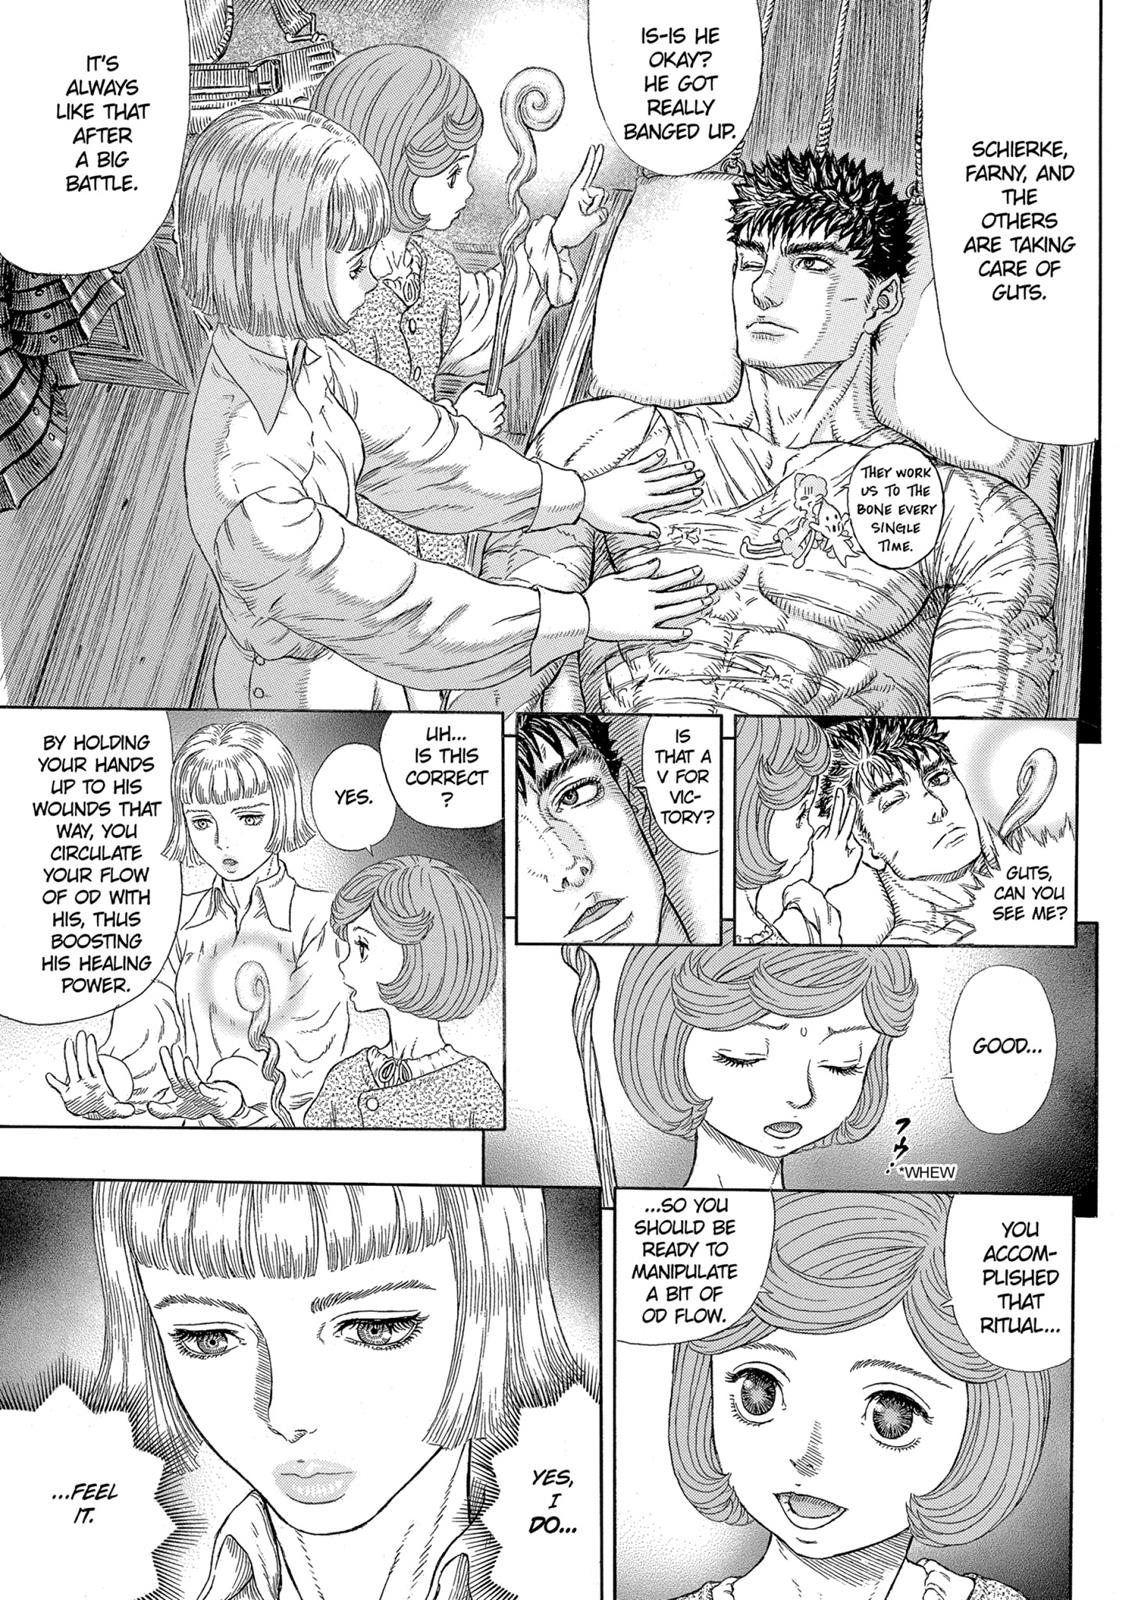 Berserk Manga Chapter 328 image 05